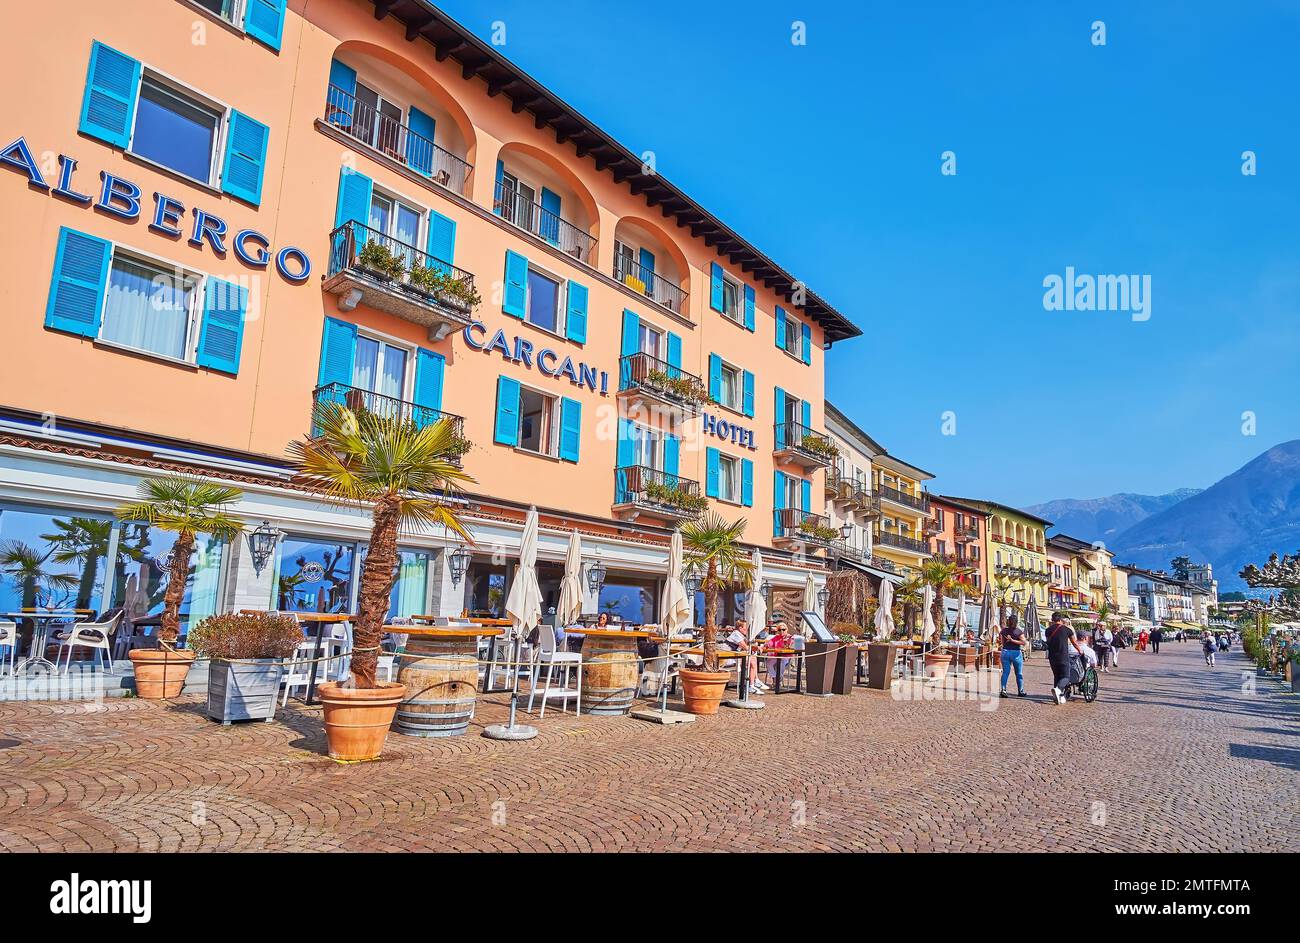 La línea de casas históricas, restaurantes al aire libre y bares en Piazza Giuseppe Motta - terraplén junto al lago en Ascona, Suiza Foto de stock